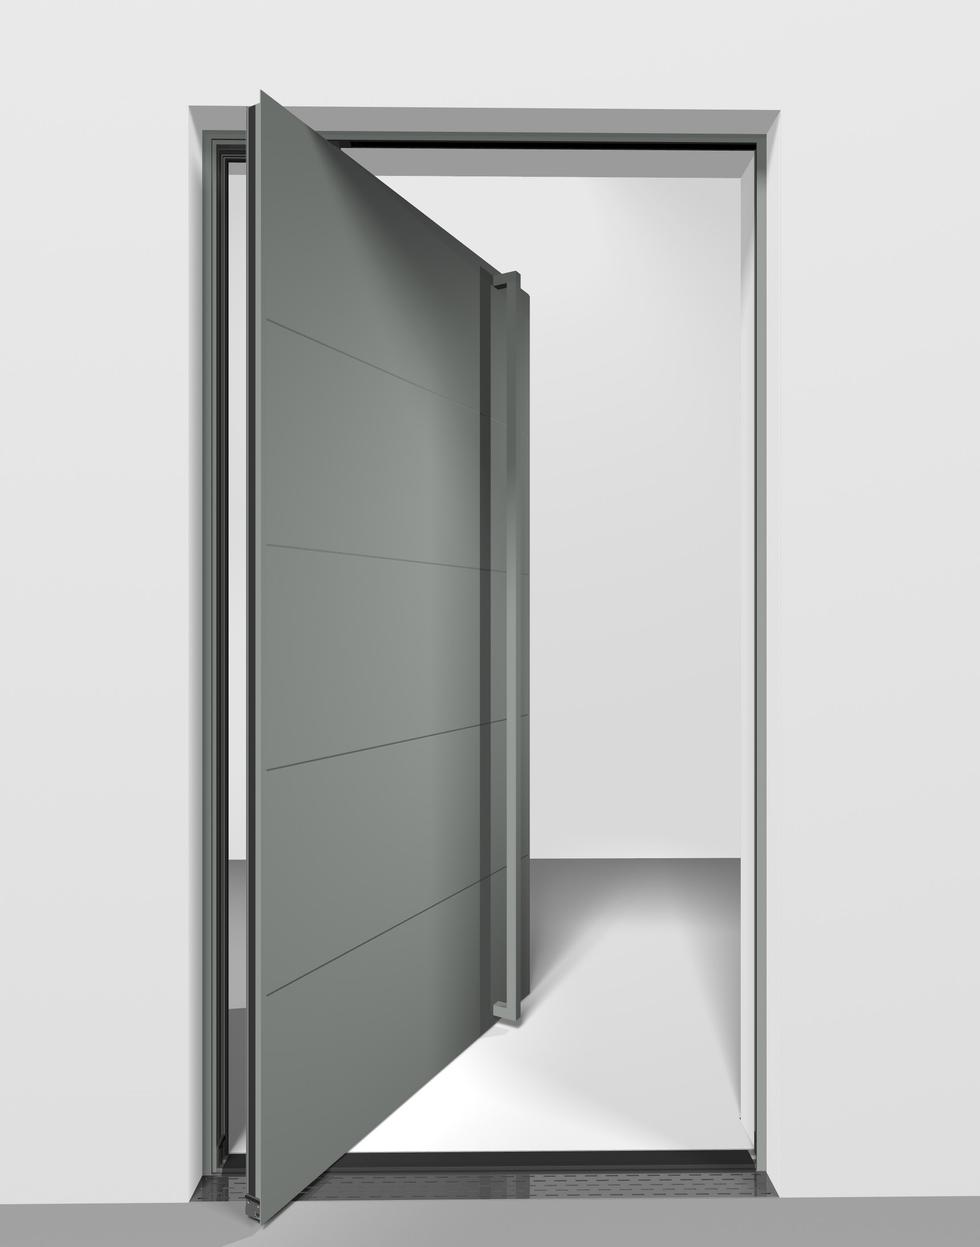 Swoboda projektowania otwartych przestrzeni z Reynaers Aluminium